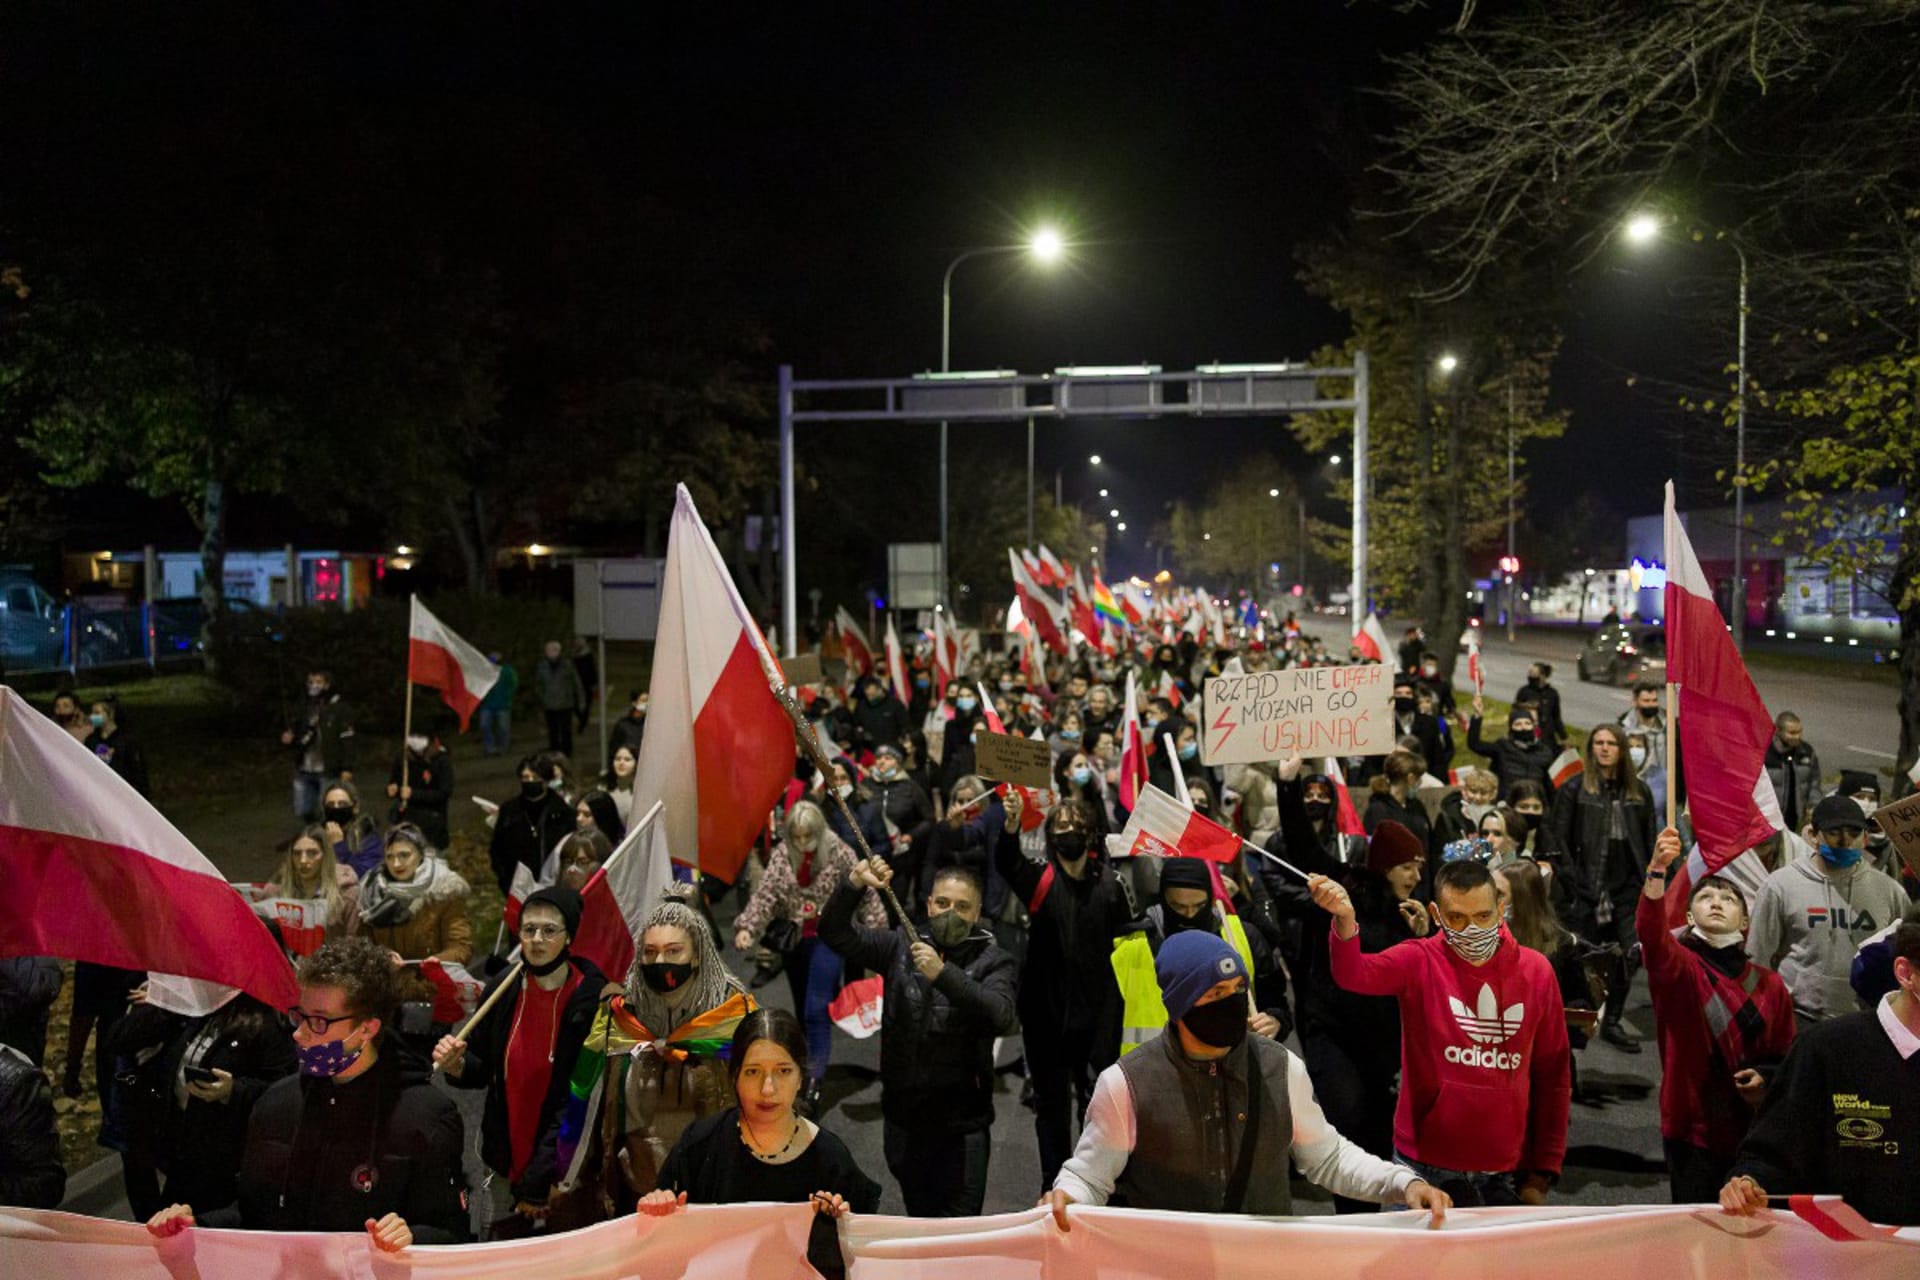 Wypierdalać! Polské ženy posílají do „někam“ vládu, ústavní soud, i církev. A kvůli plánovanému zpřísnění potratového zákona demonstrují každý den. (foto: Twitter.com)